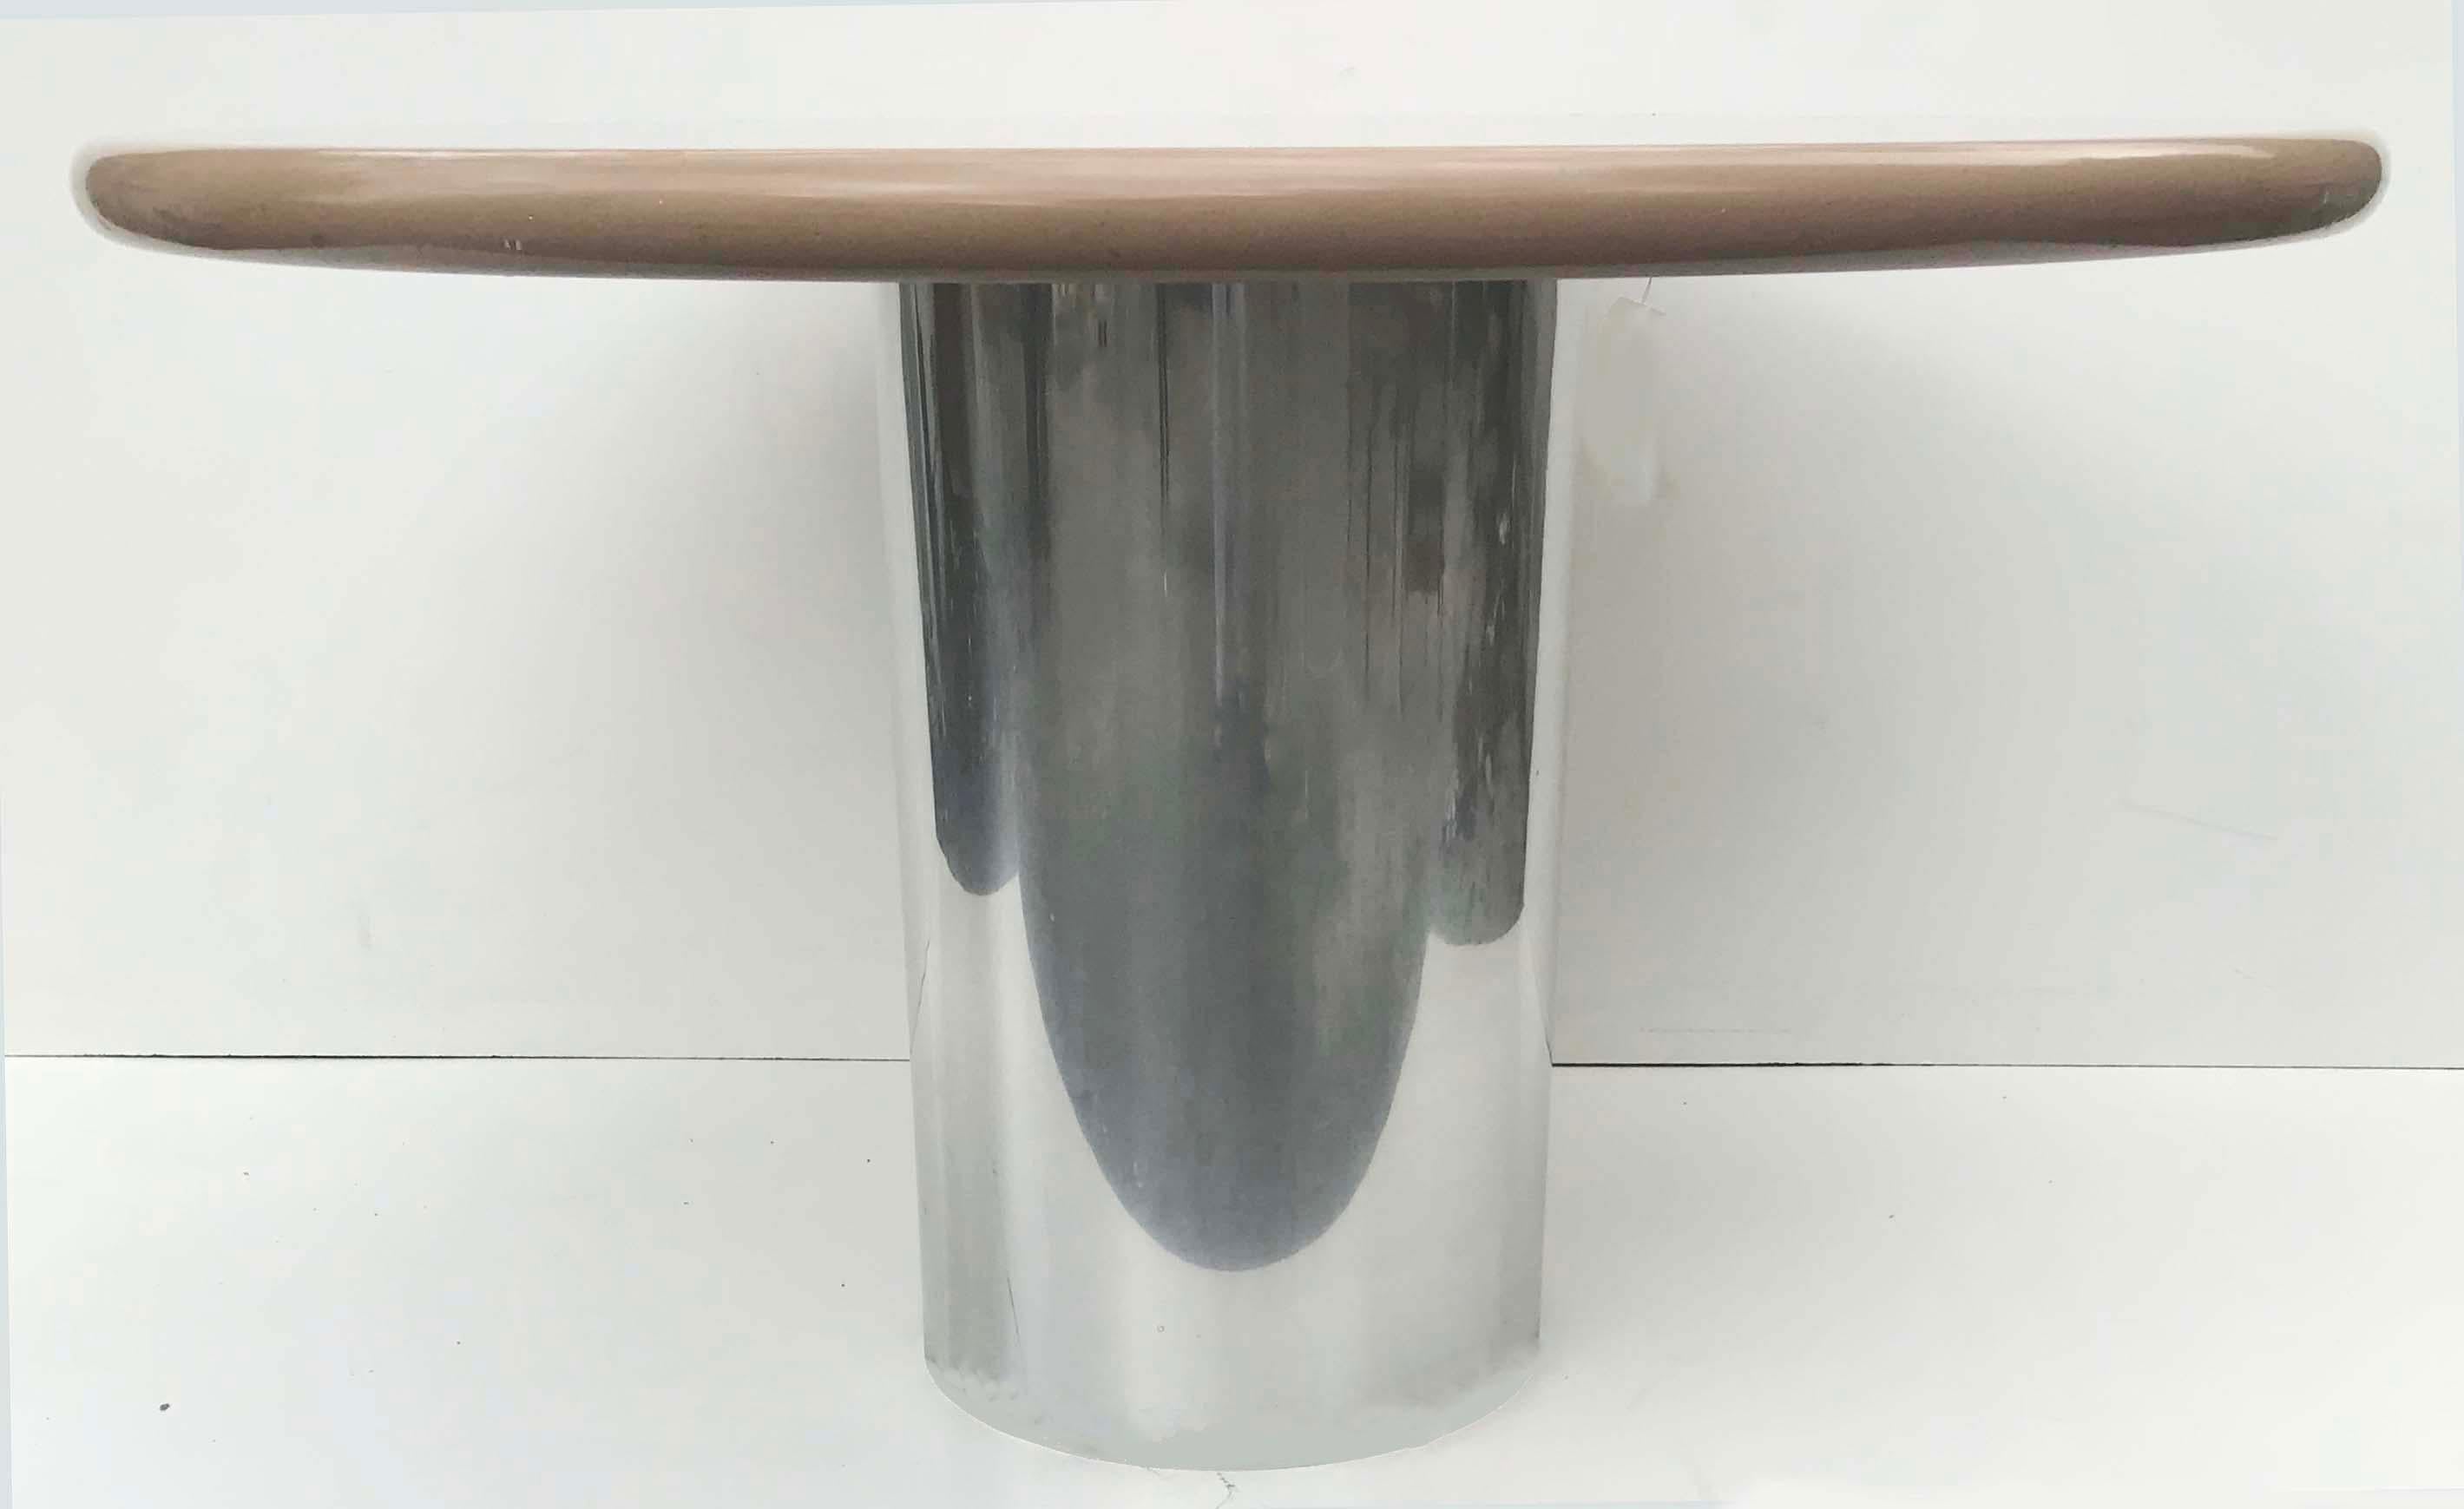 Herrlicher runder Esstisch im Stil von Karl Springer, Platte aus Laminat und runder Stahlfuß.

Durchmesser des Rohrs: 16